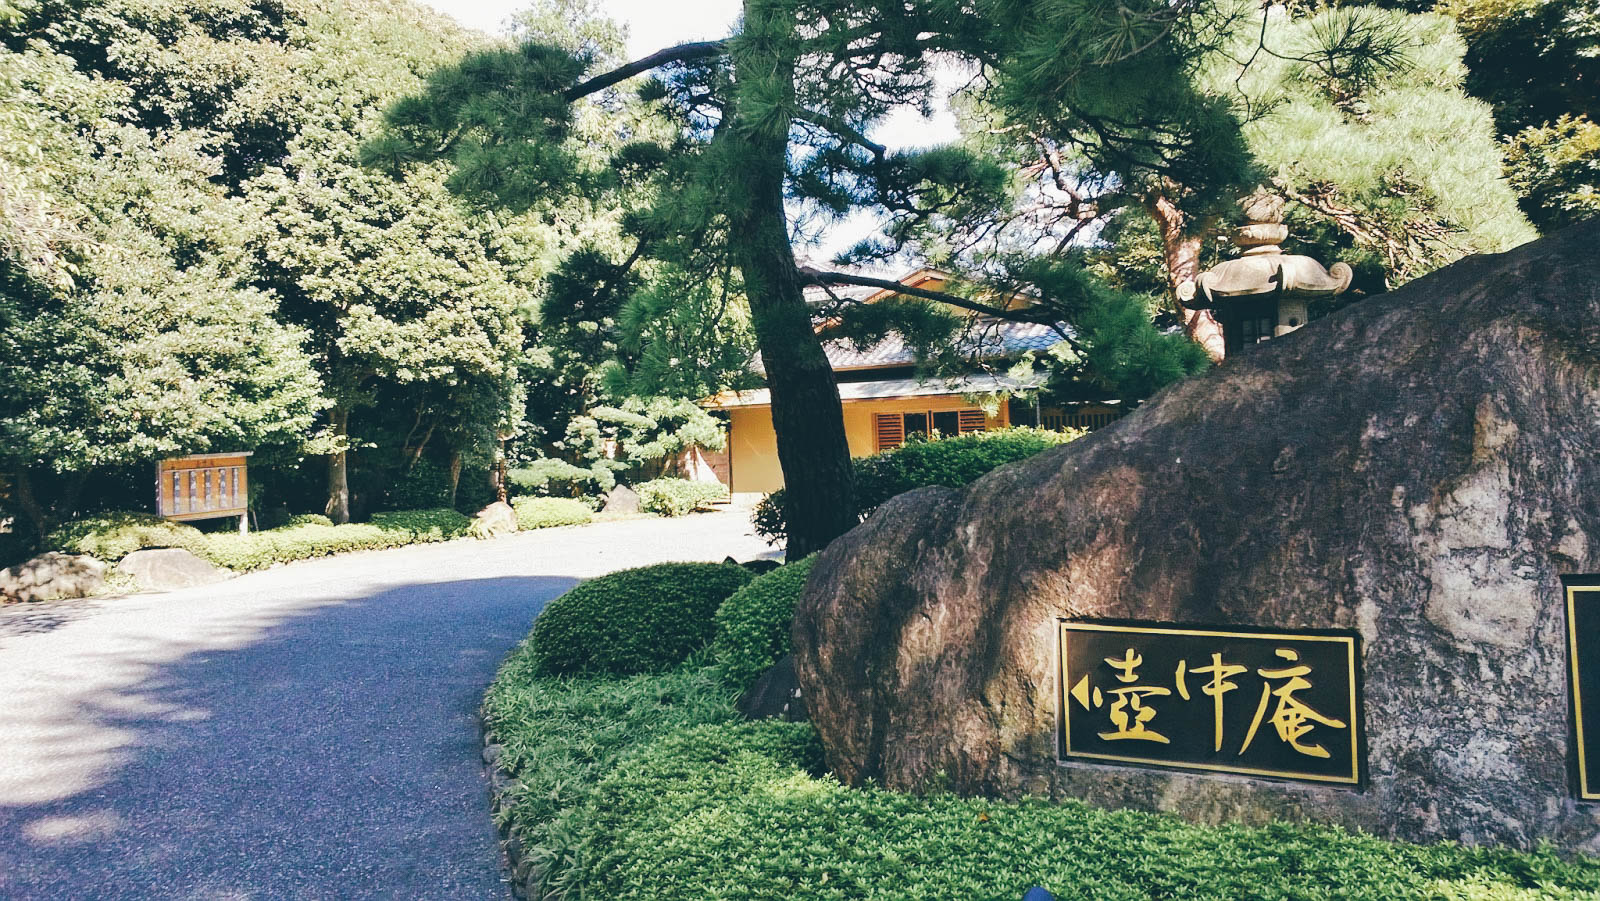 东京好去处 壶中庵感受传统日式庭院之美 Mars 探索新鲜城事